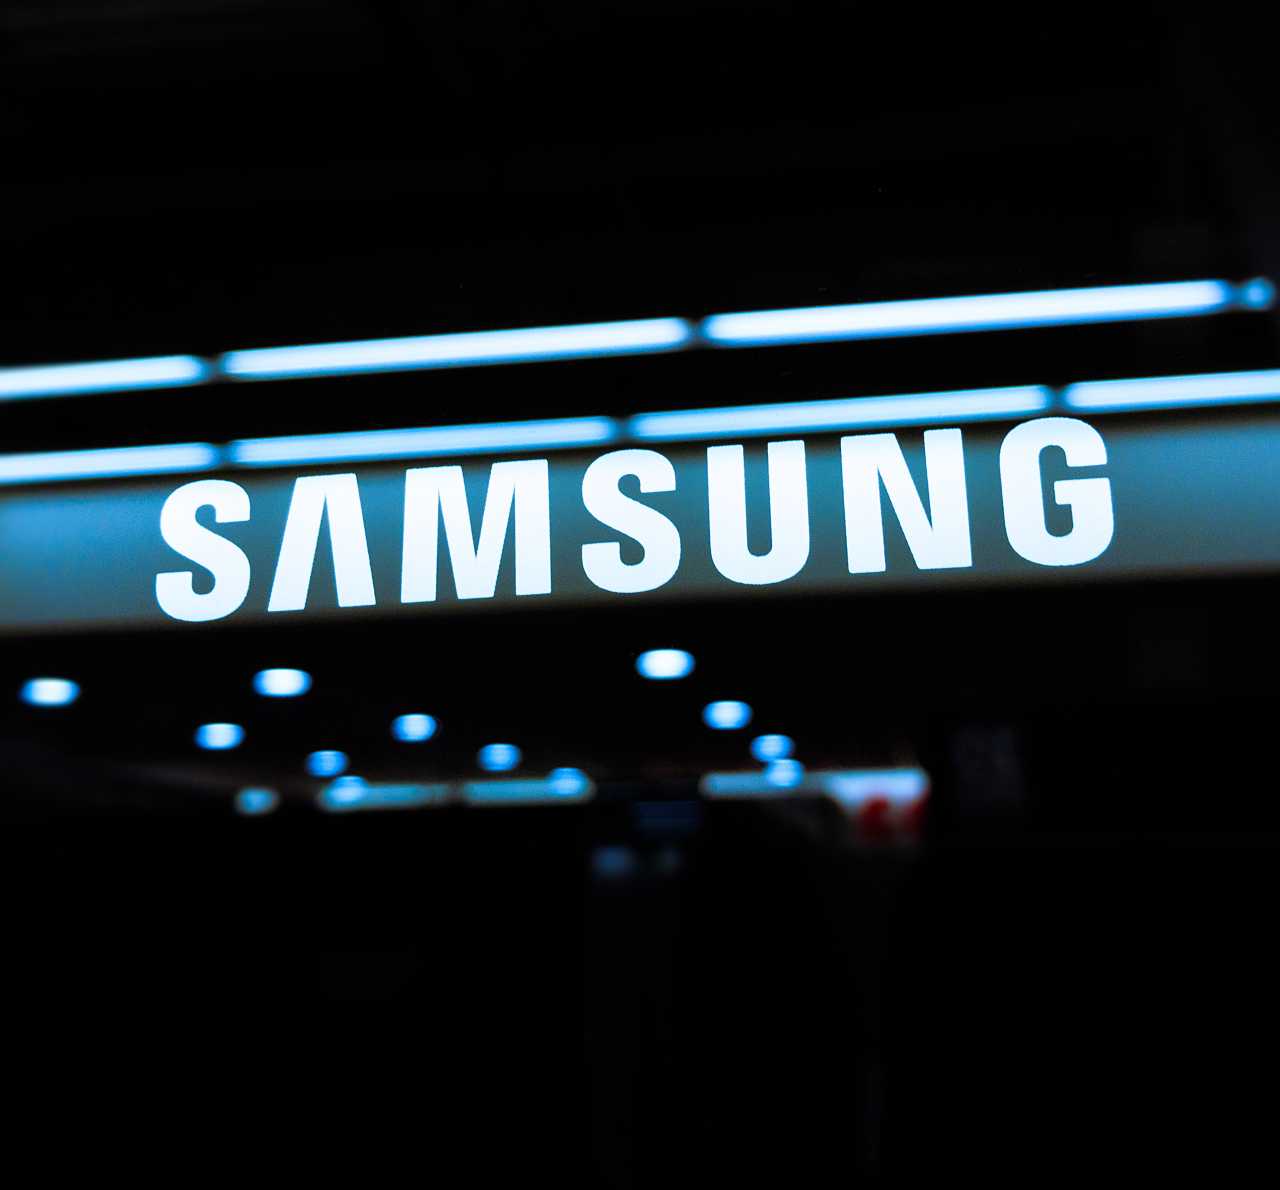 Samsung 20220504 tech